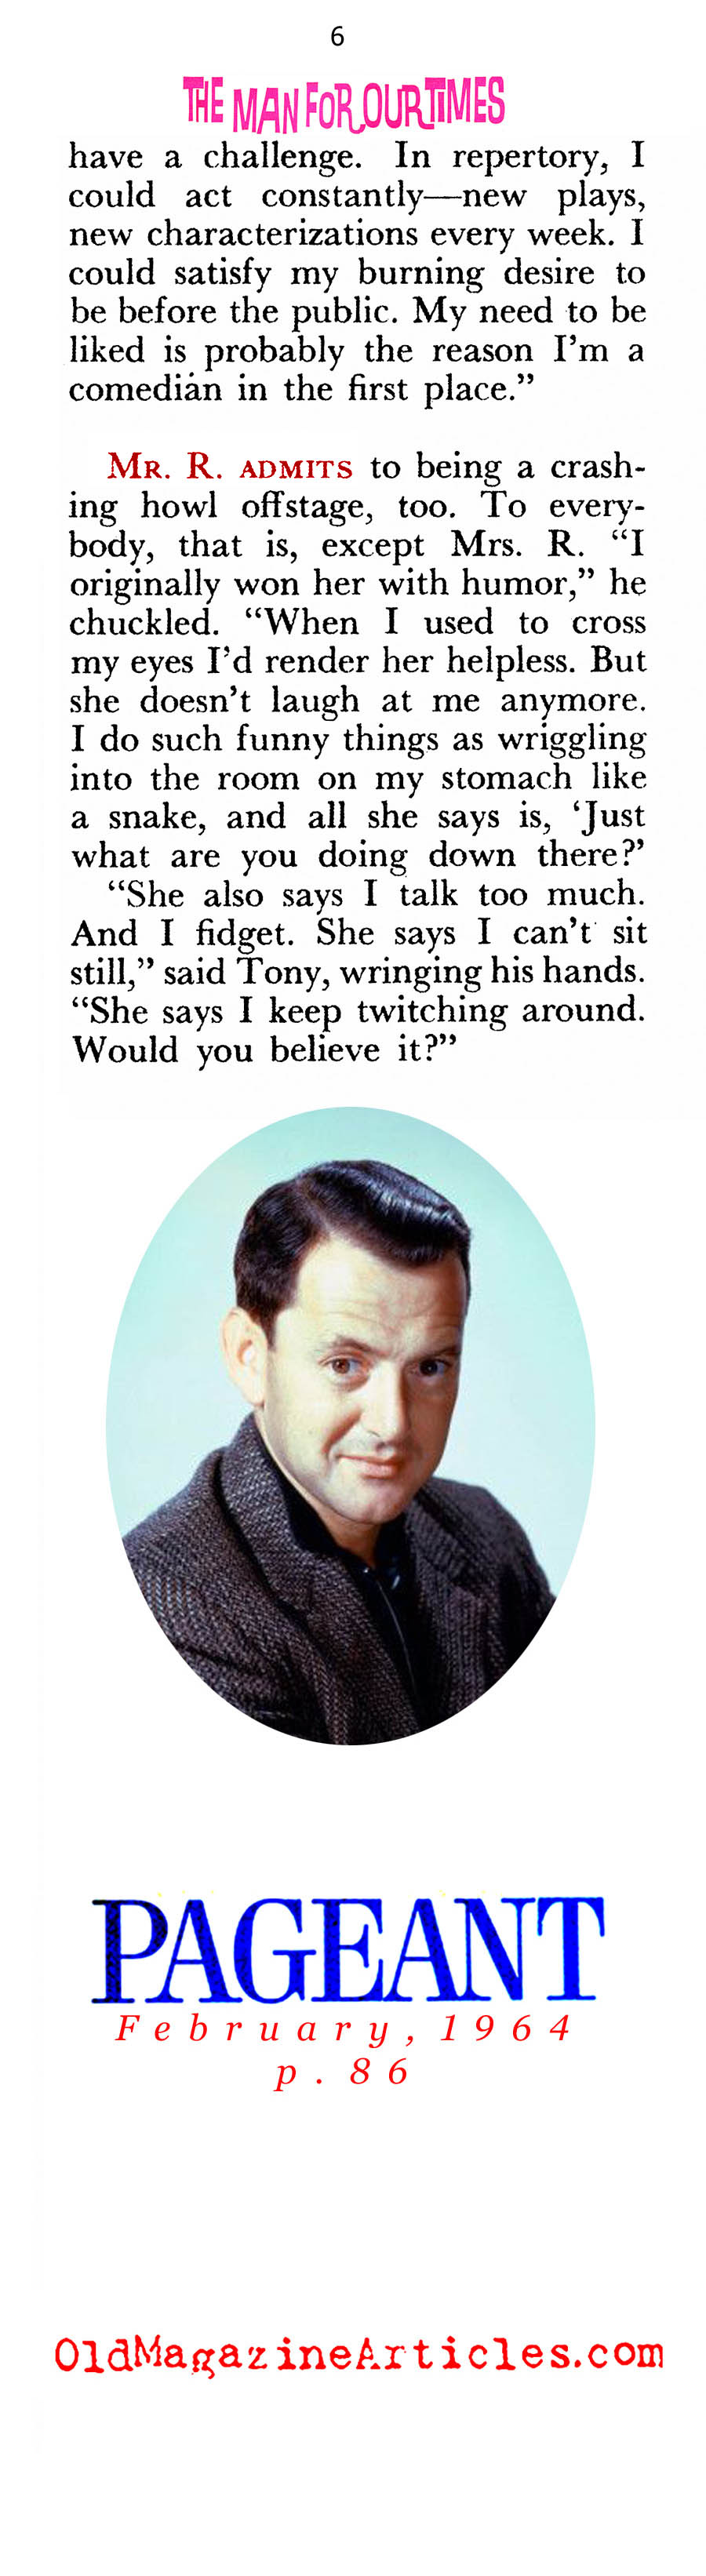 Tony Randall: Movie Star (Pageant Magazine,1964)